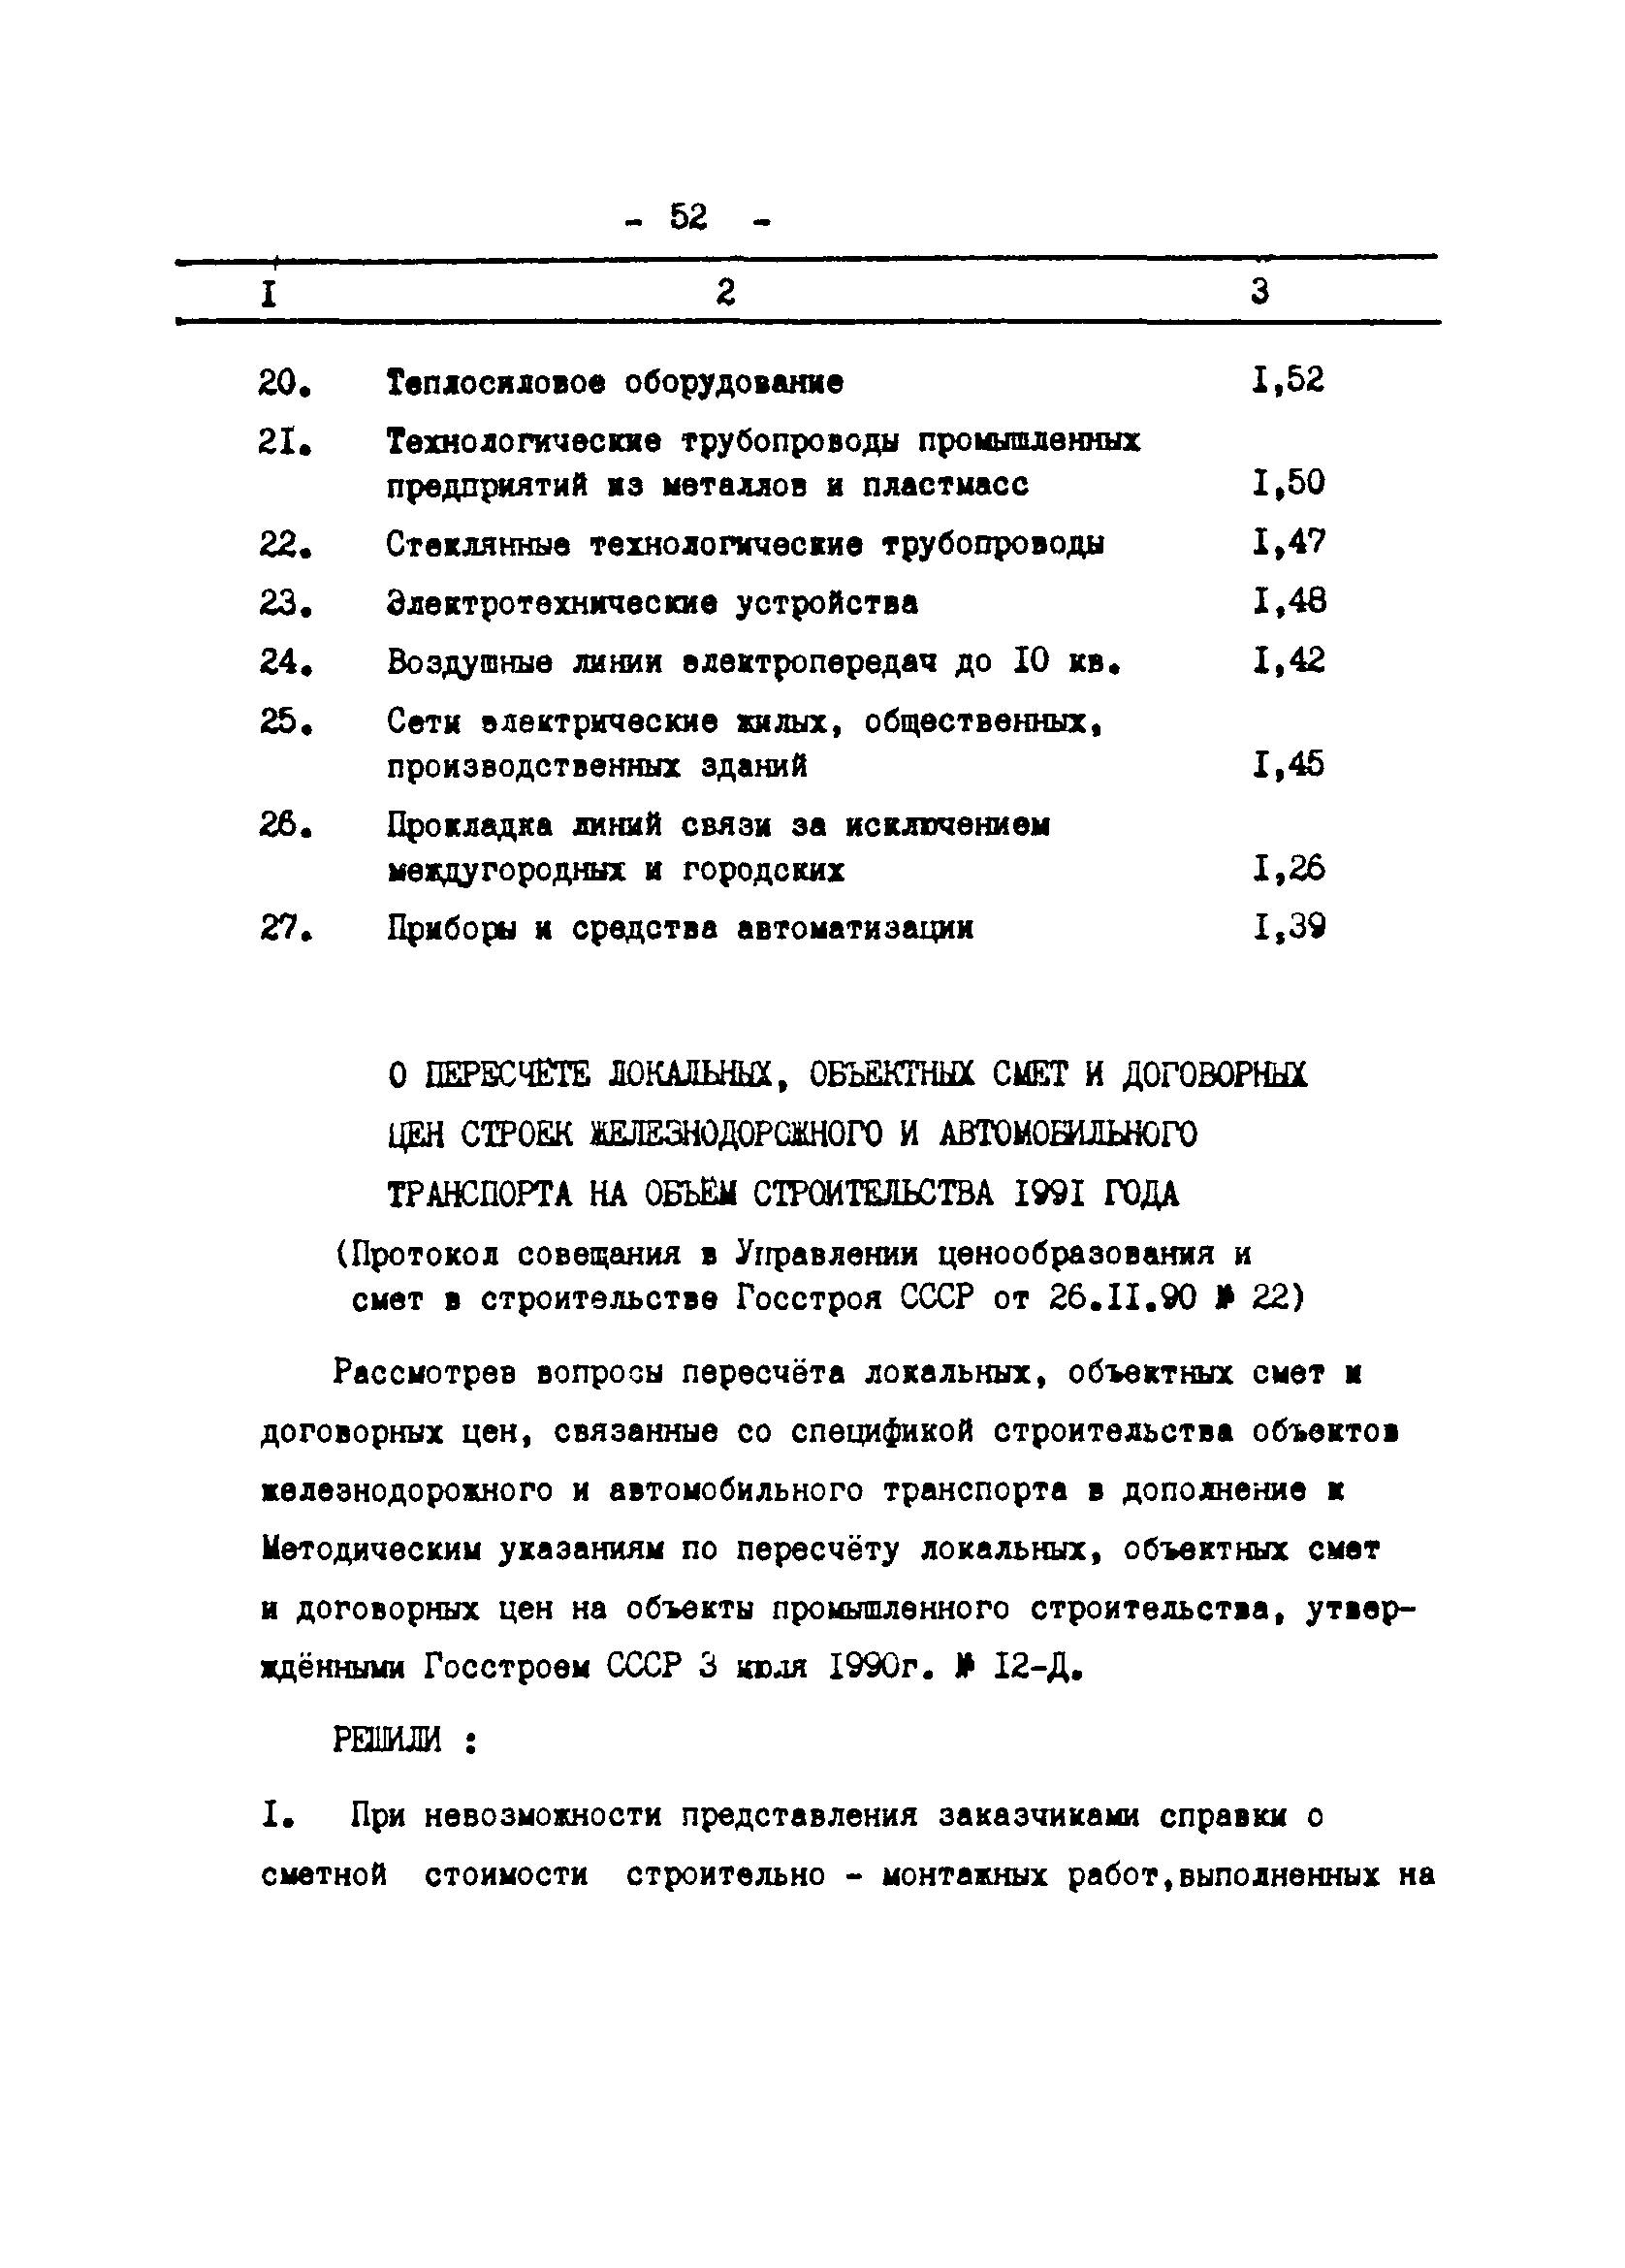 Методические указания 2-91